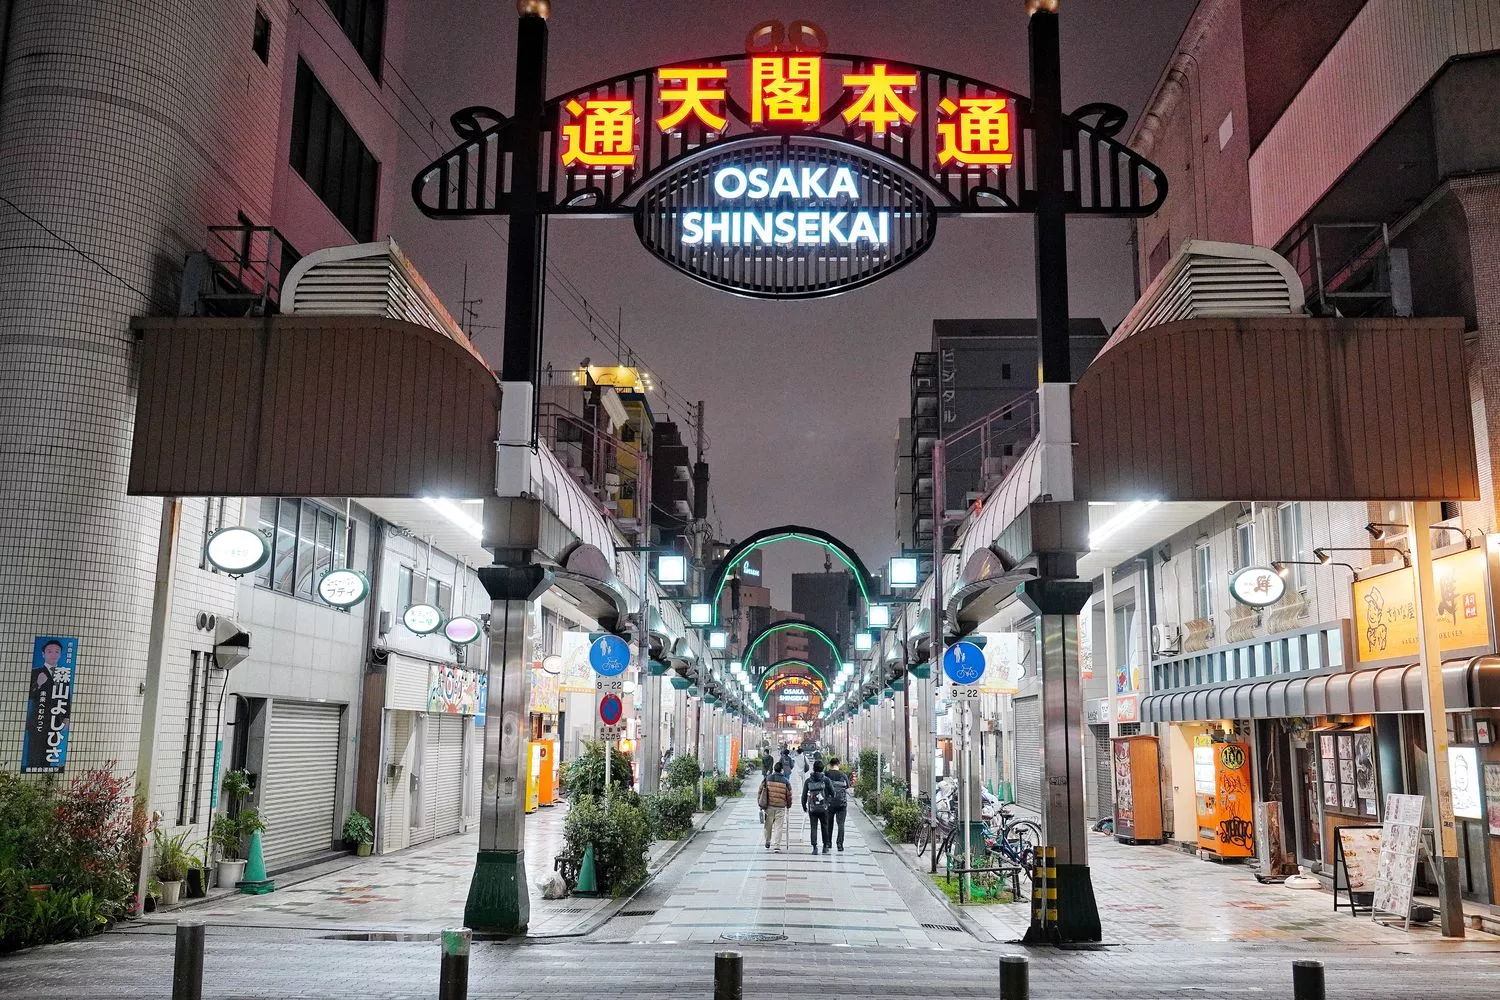 【2023日本大阪景點推薦】精選 18 個大阪自由行必去景點/行程/門票 完整攻略! @混血珊莎的奇幻旅程